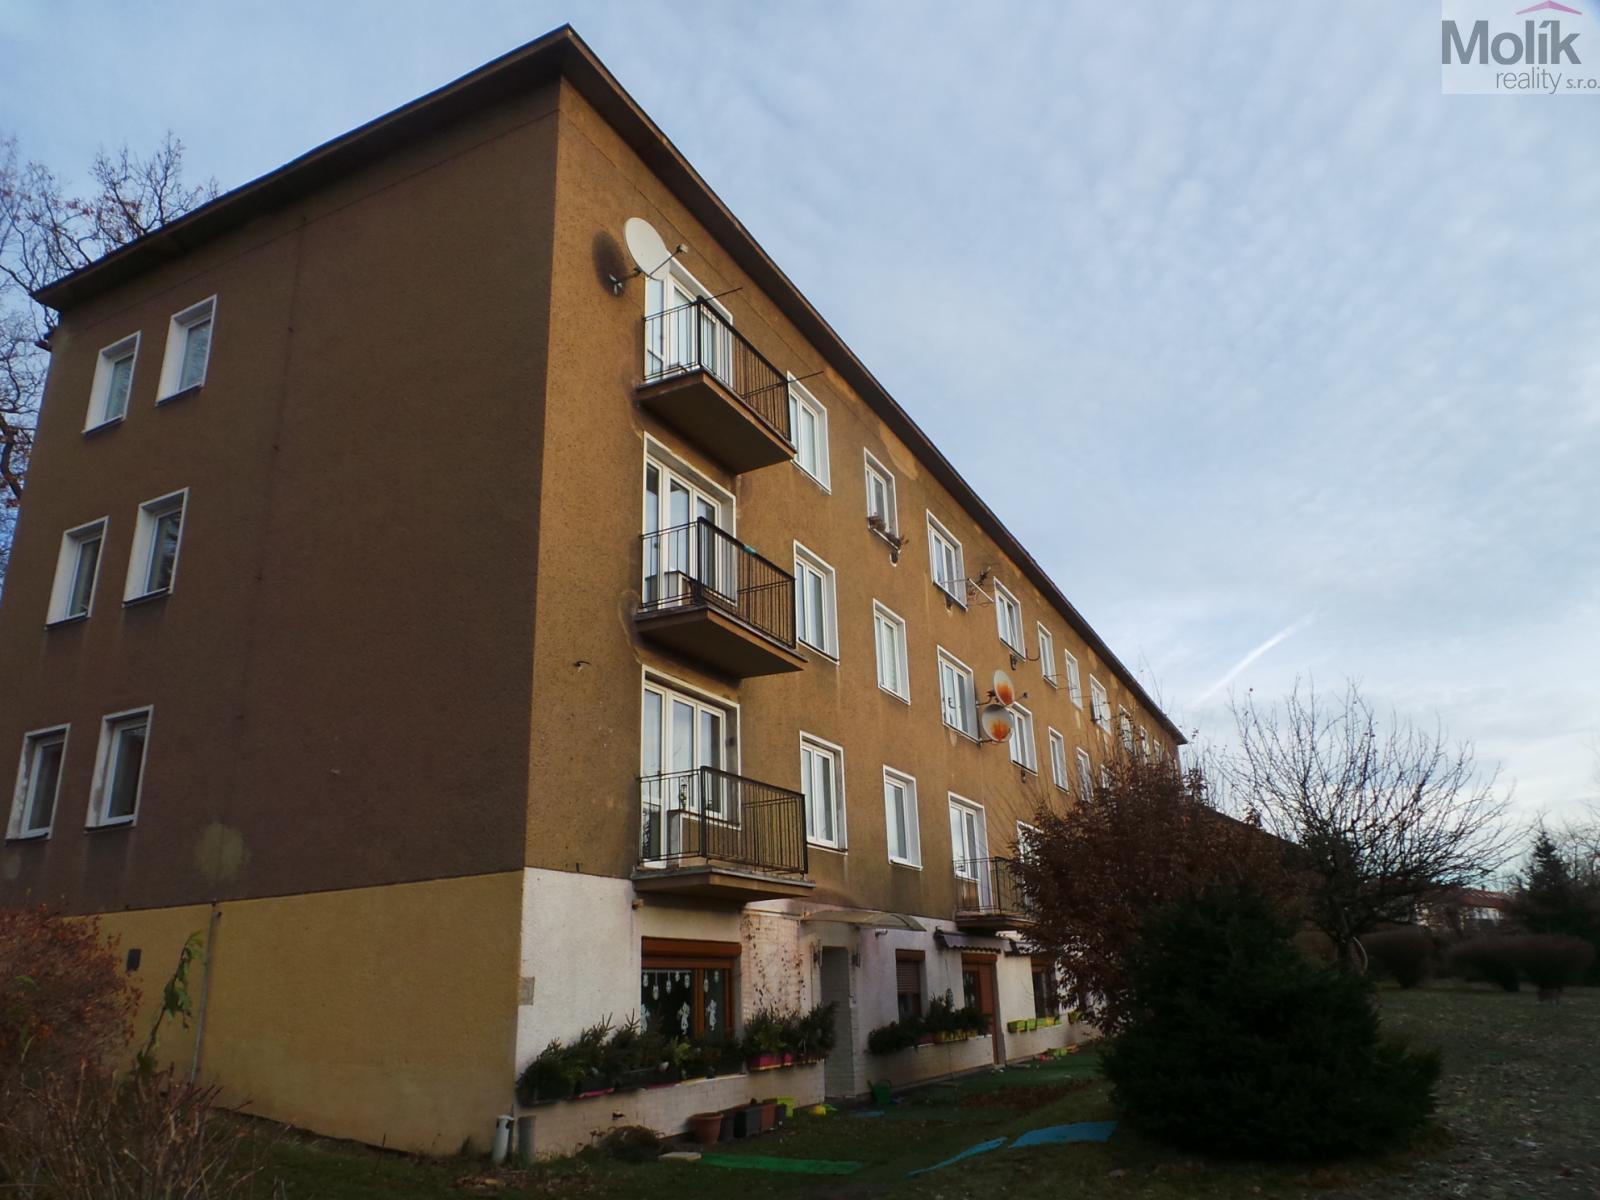 Prodej bytové jednotky 2+1, 56 m2, Litvínov ulice K Loučkám